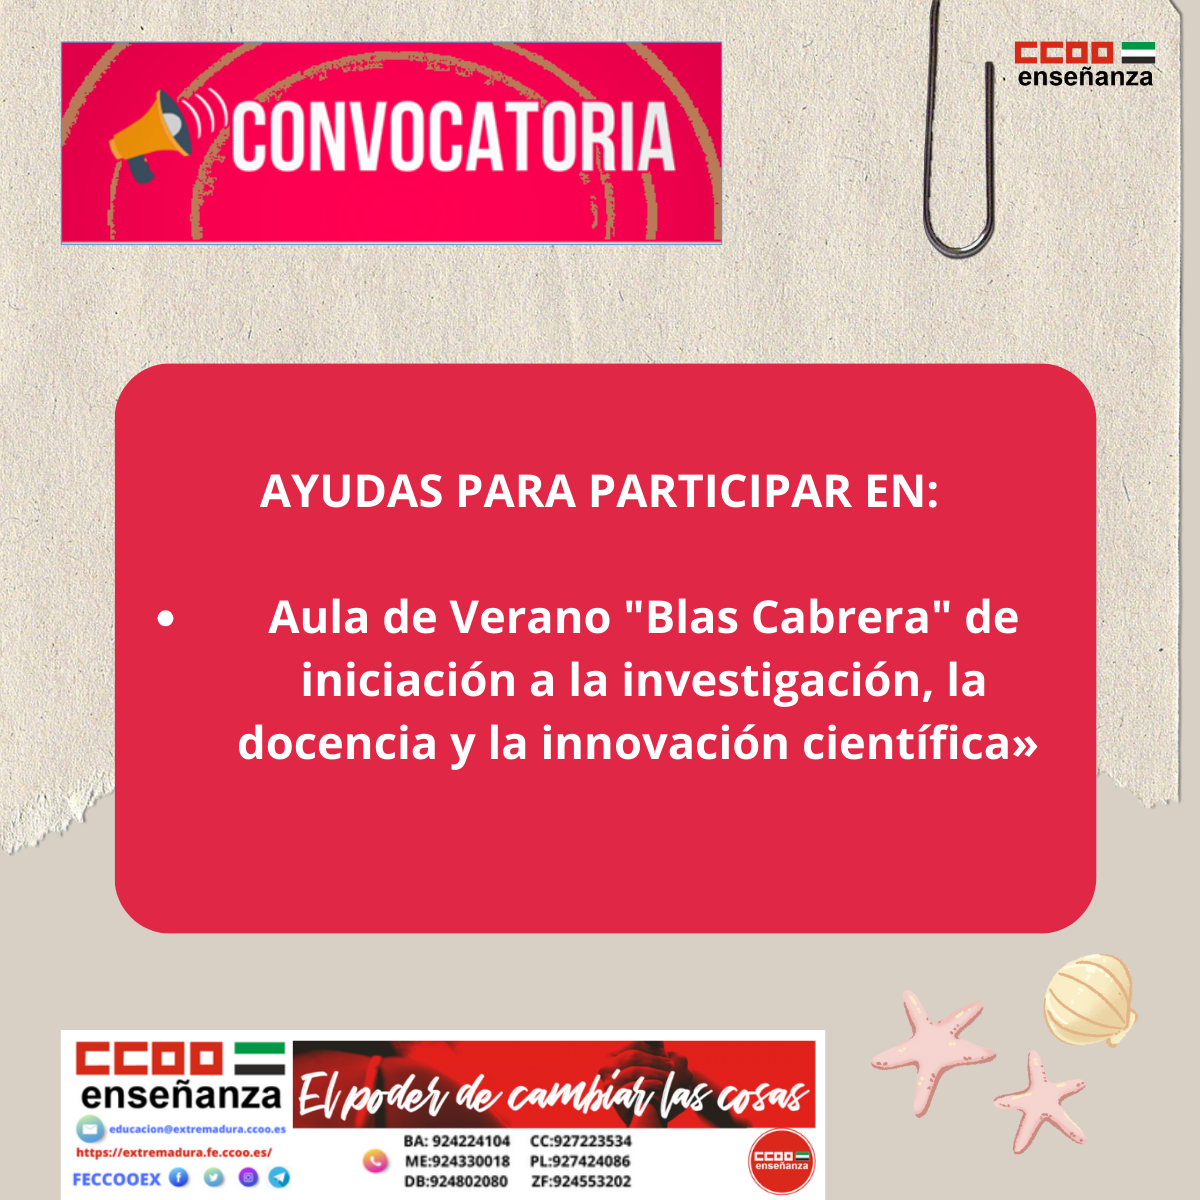 Ayudas para participar en el Aula de Verano "Blas Cabrera" de iniciacin a la investigacin, la docencia y la innovacin cientfica